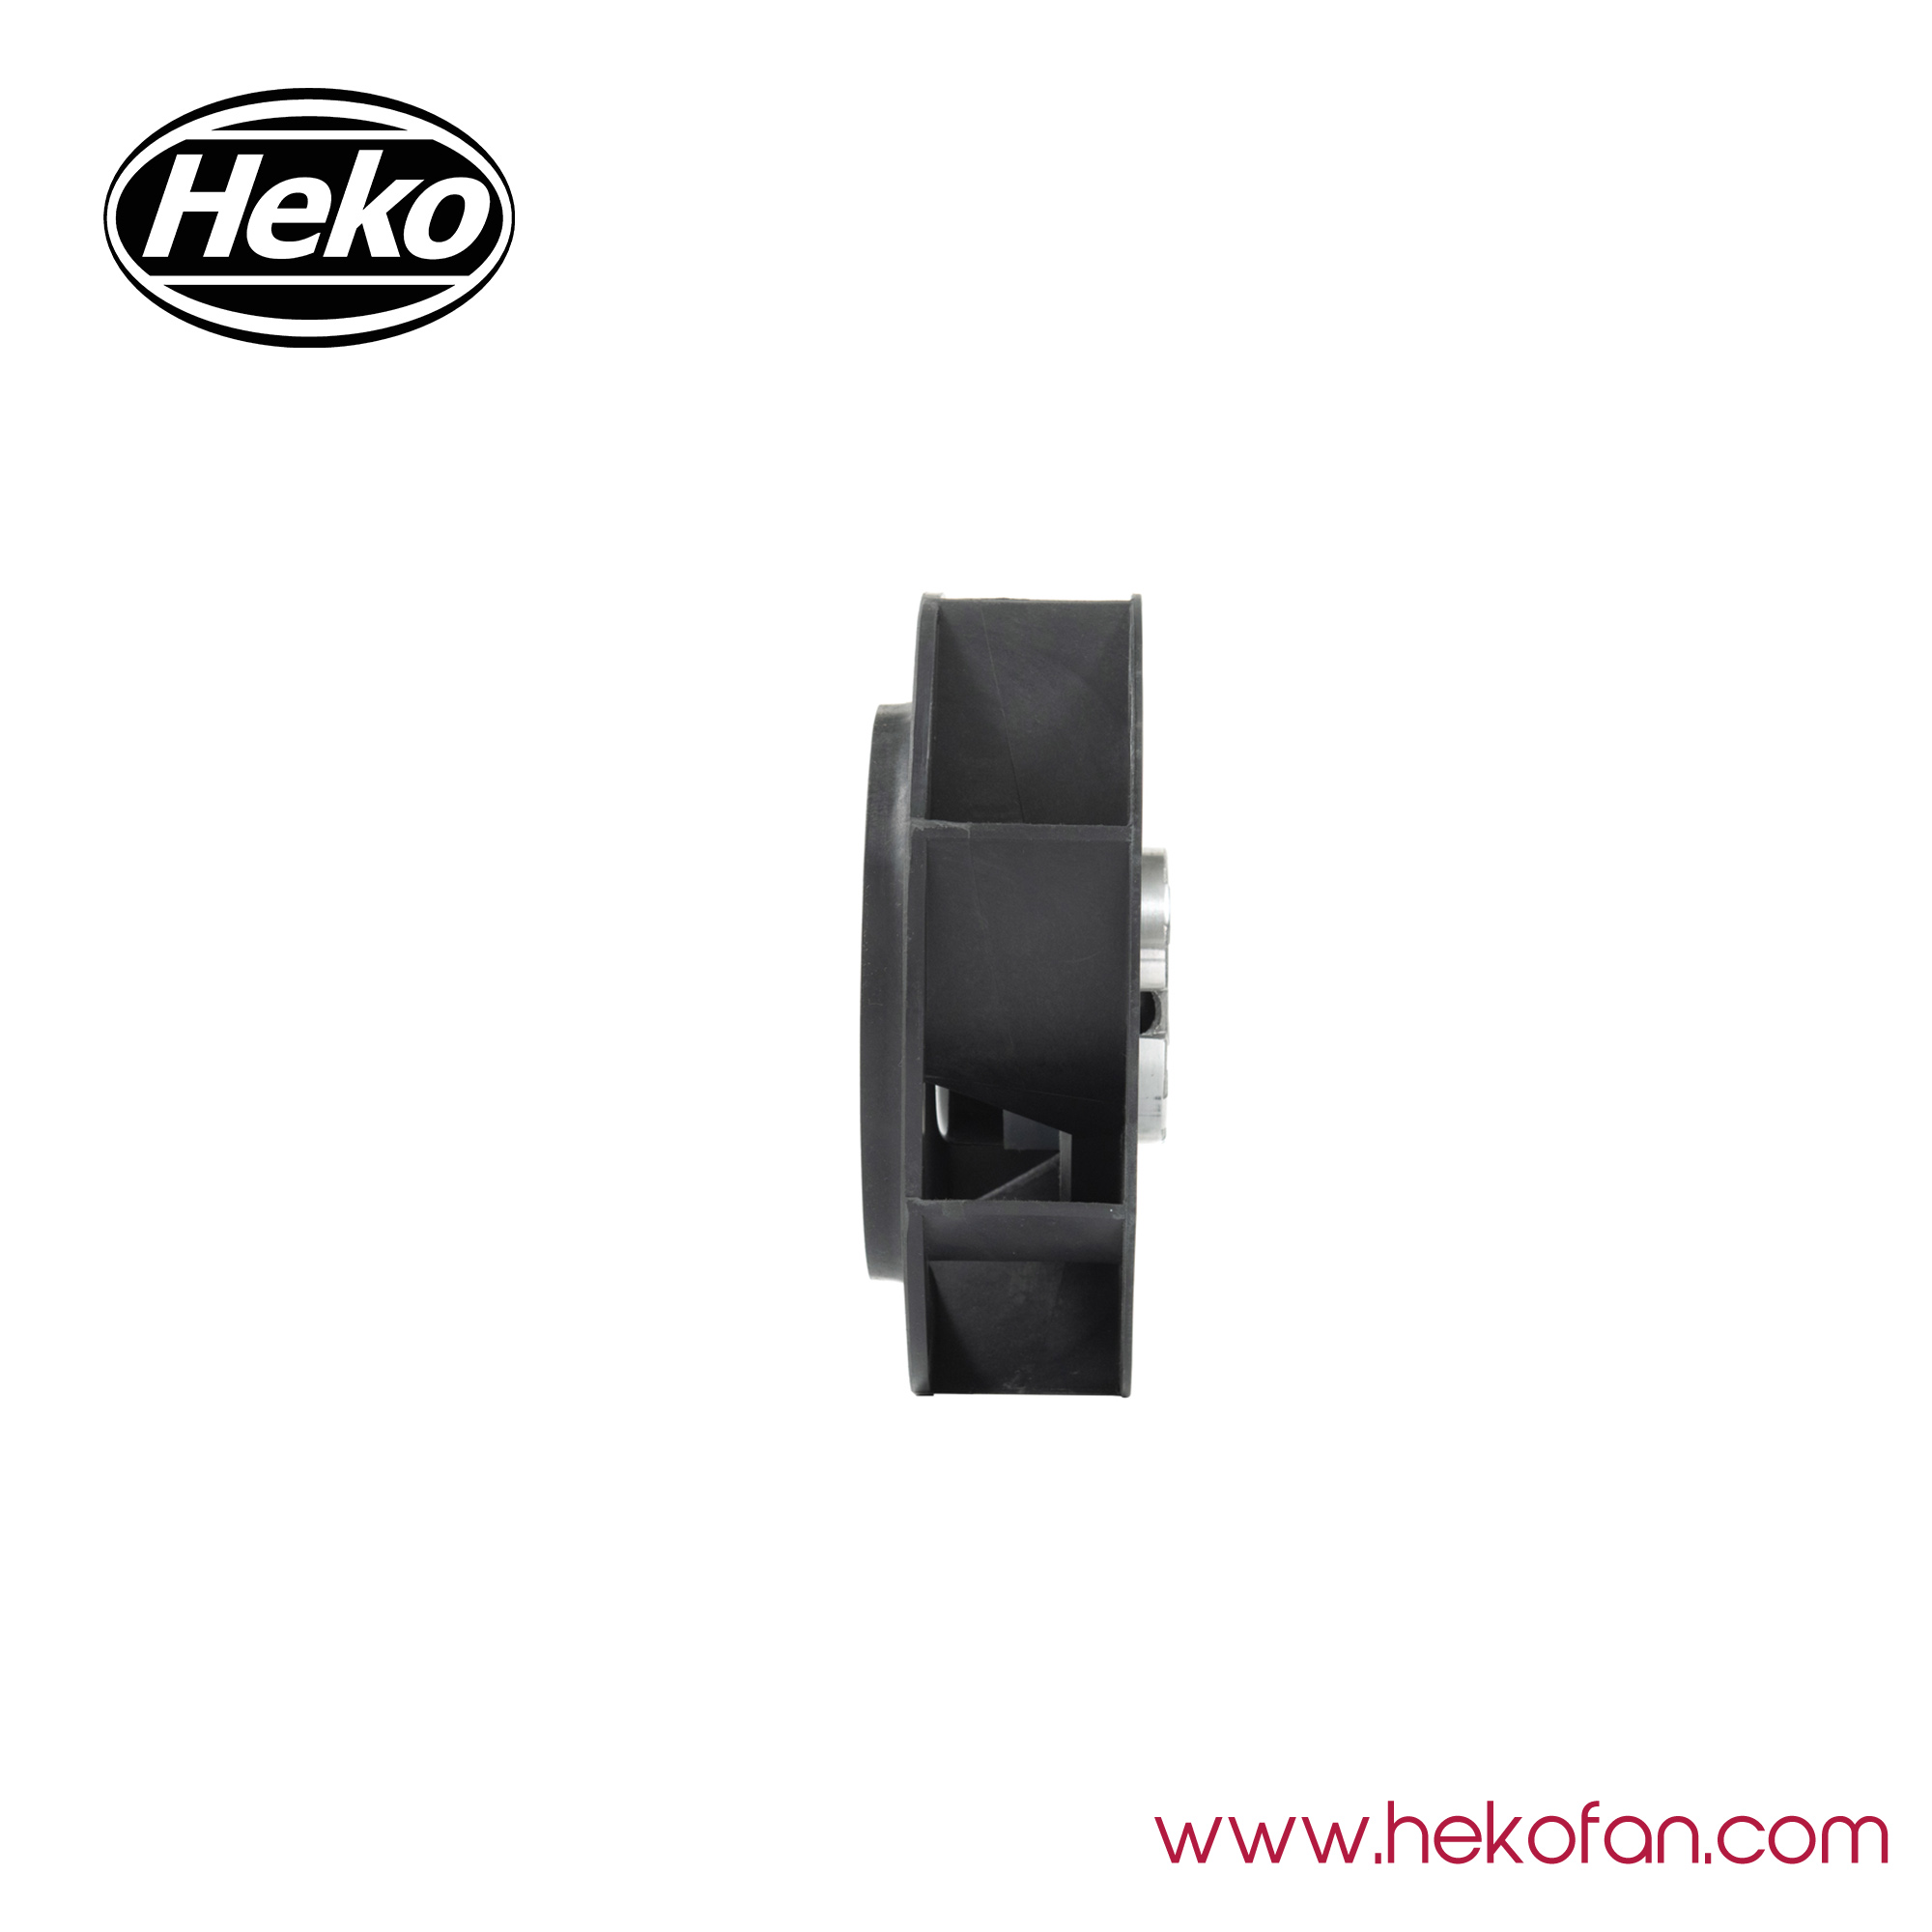 HEKO DC190mm Plastic Impeller High Pressure Centrifugal Fan 